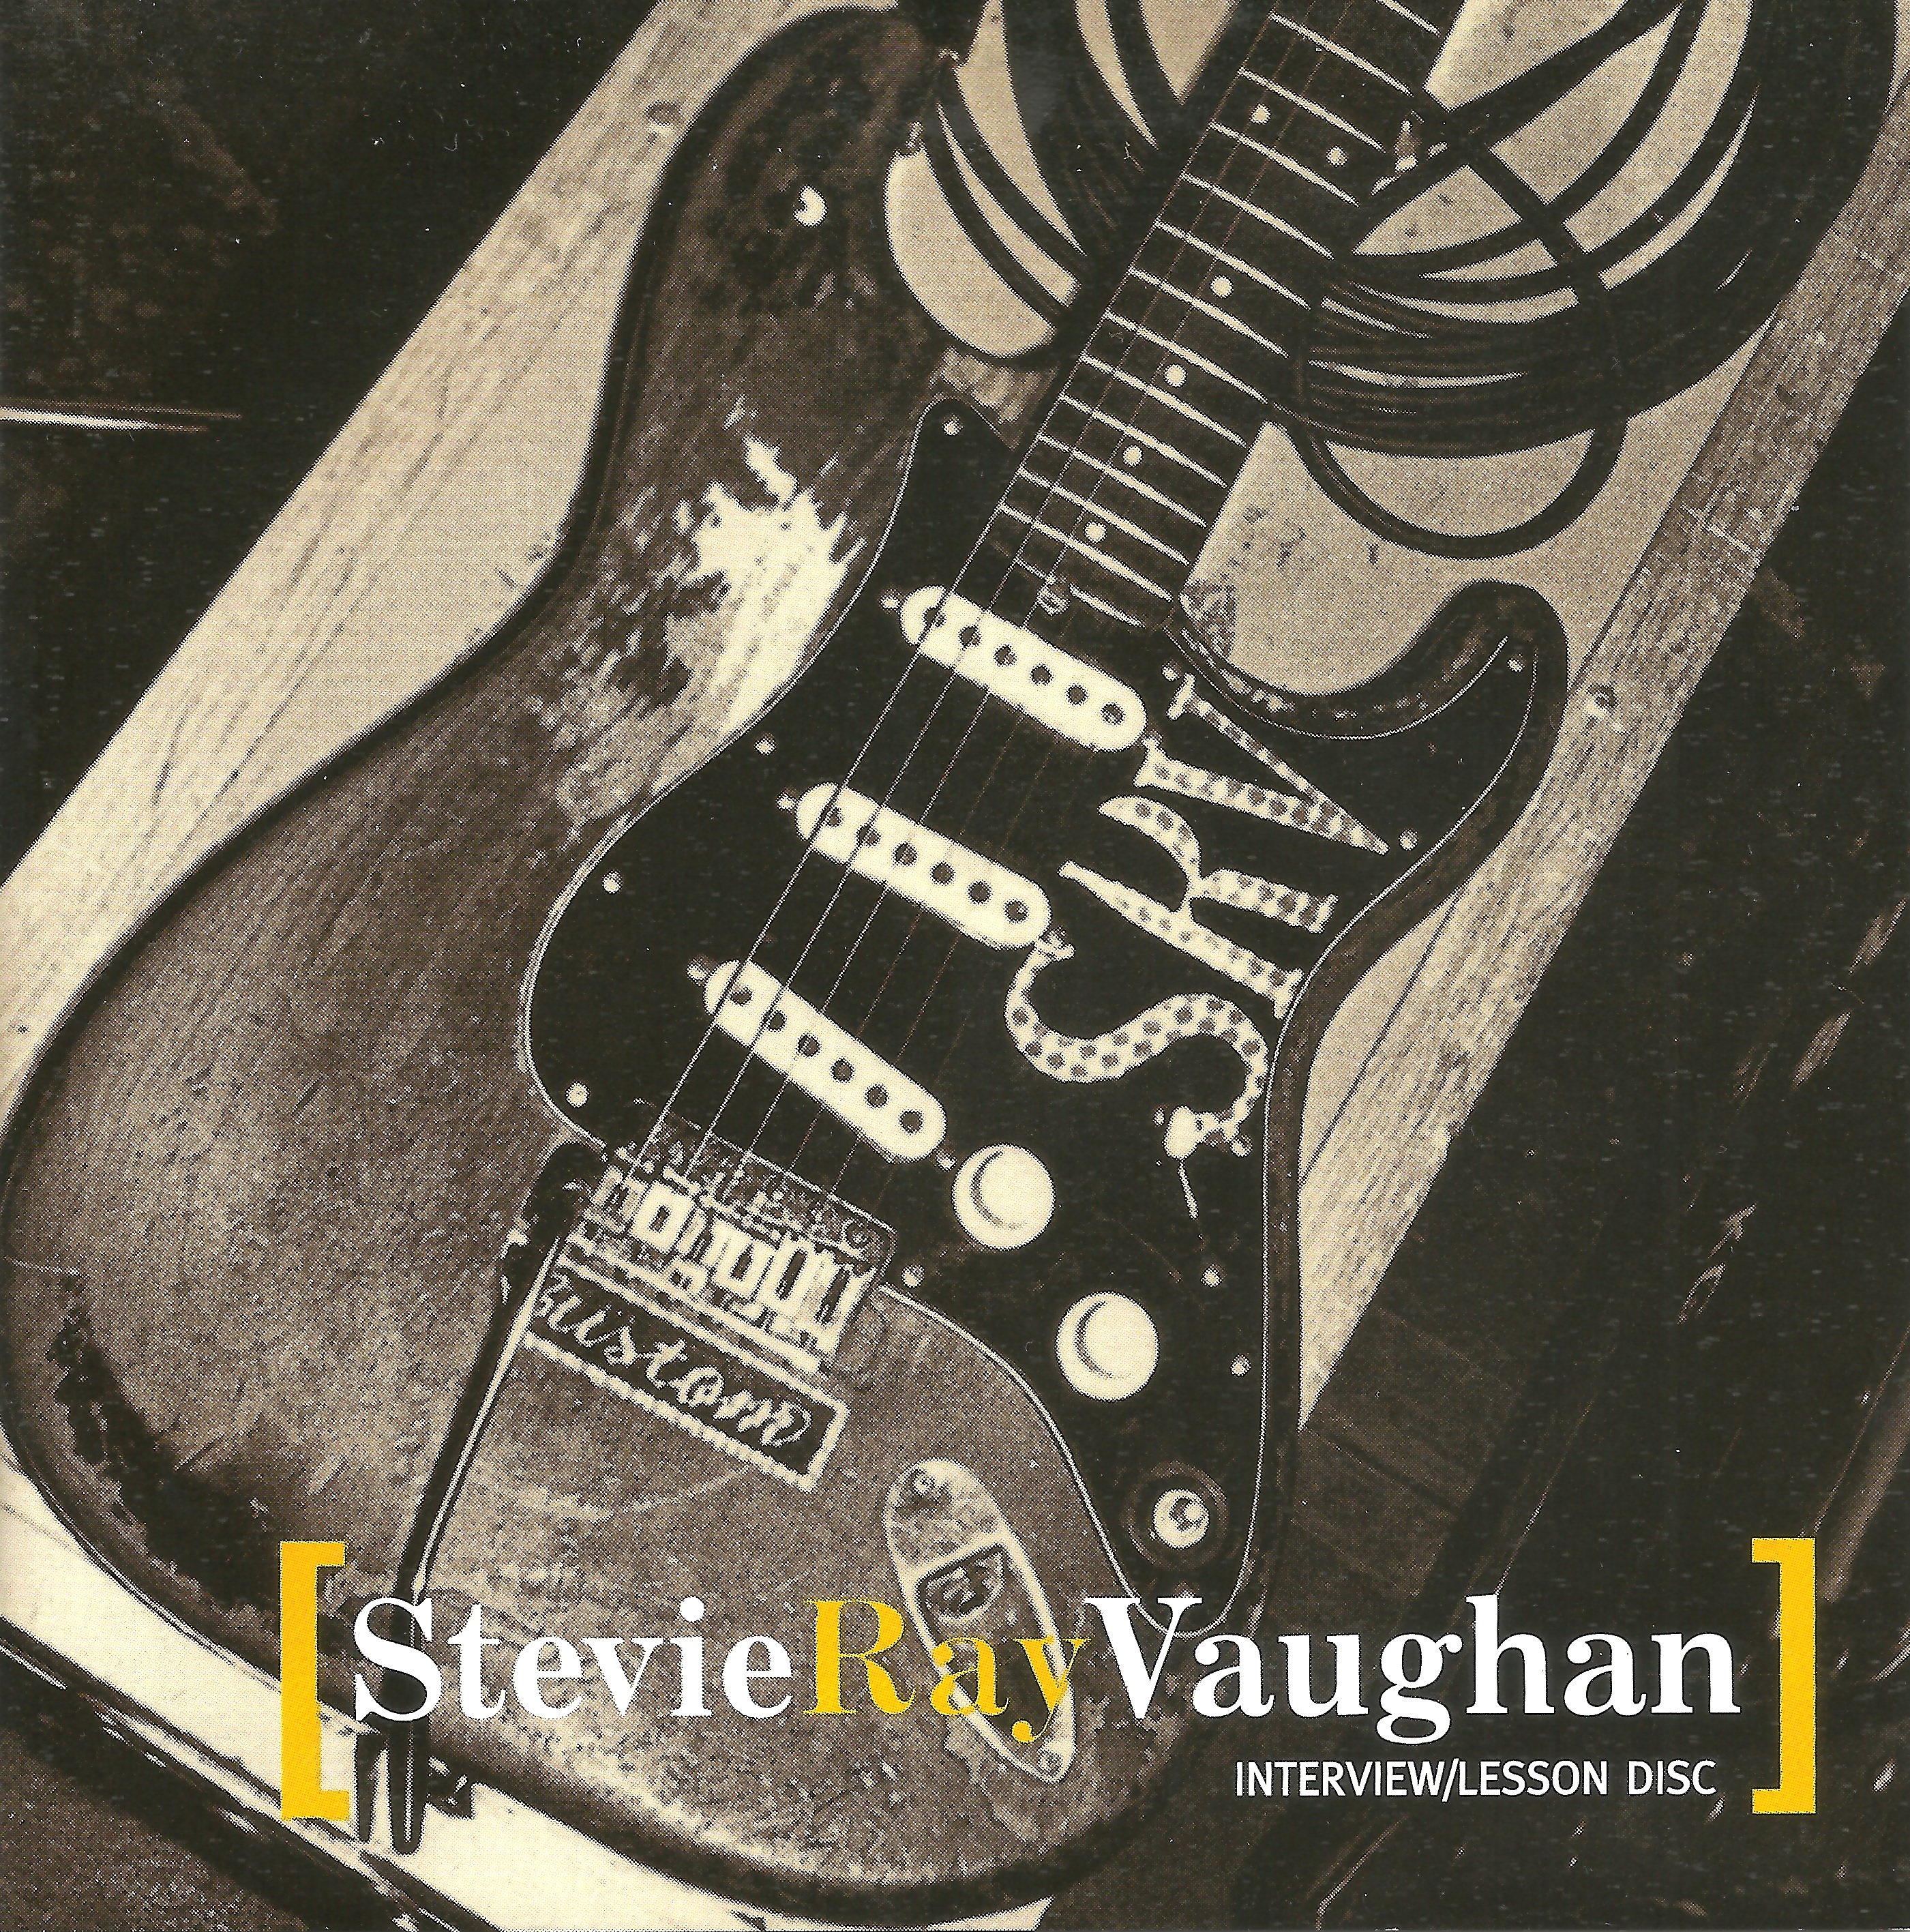 StevieRayVaughan1986-1989InterviewAndLessonDiscPromoCD (2).jpg